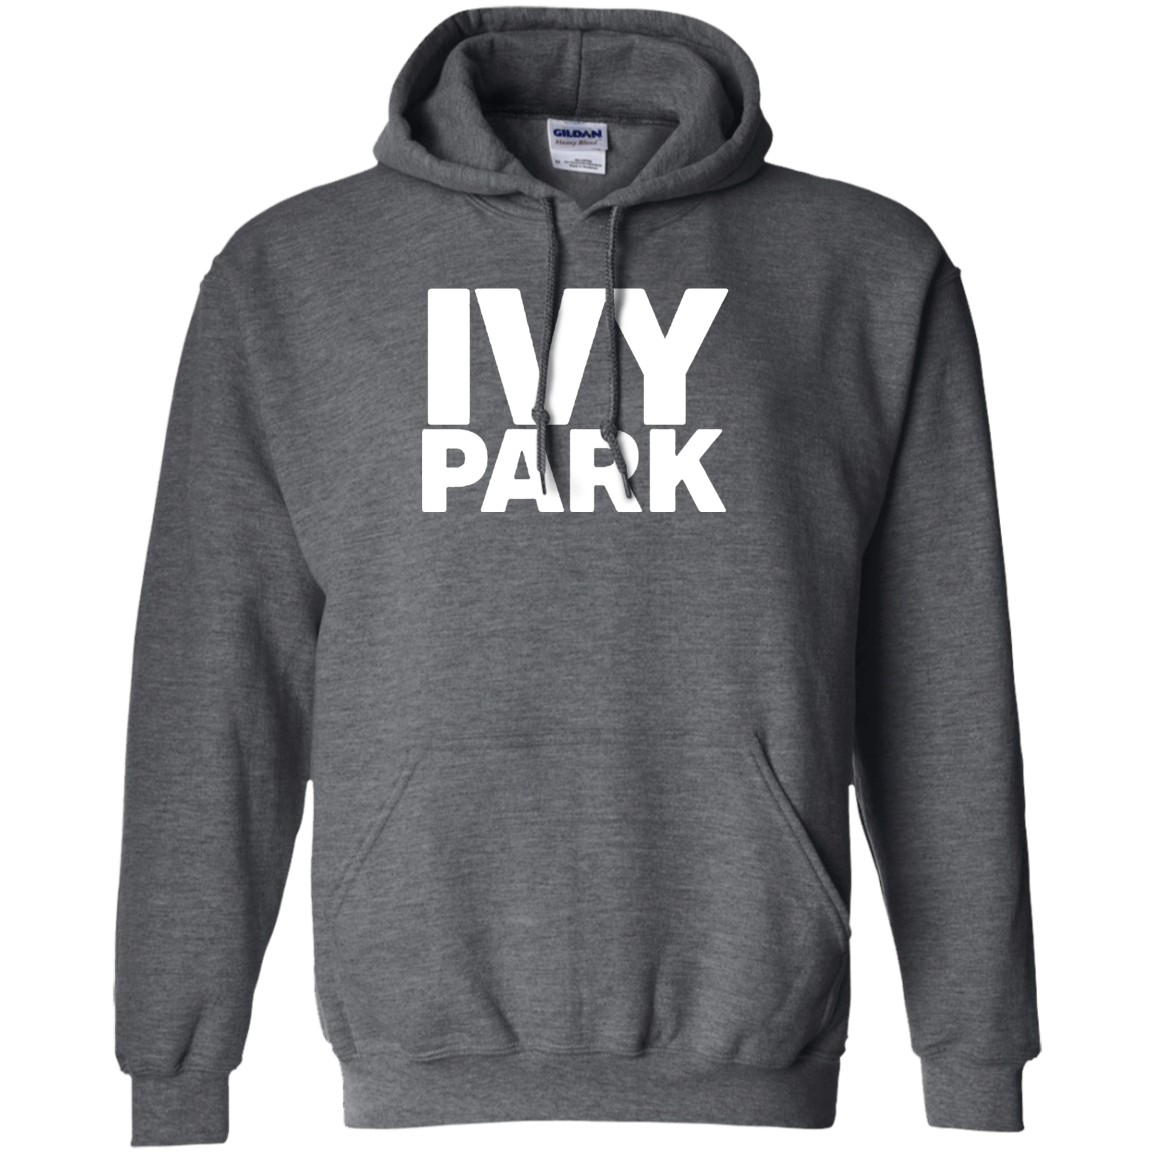 Ivy Park Hoodie – Wind Vandy